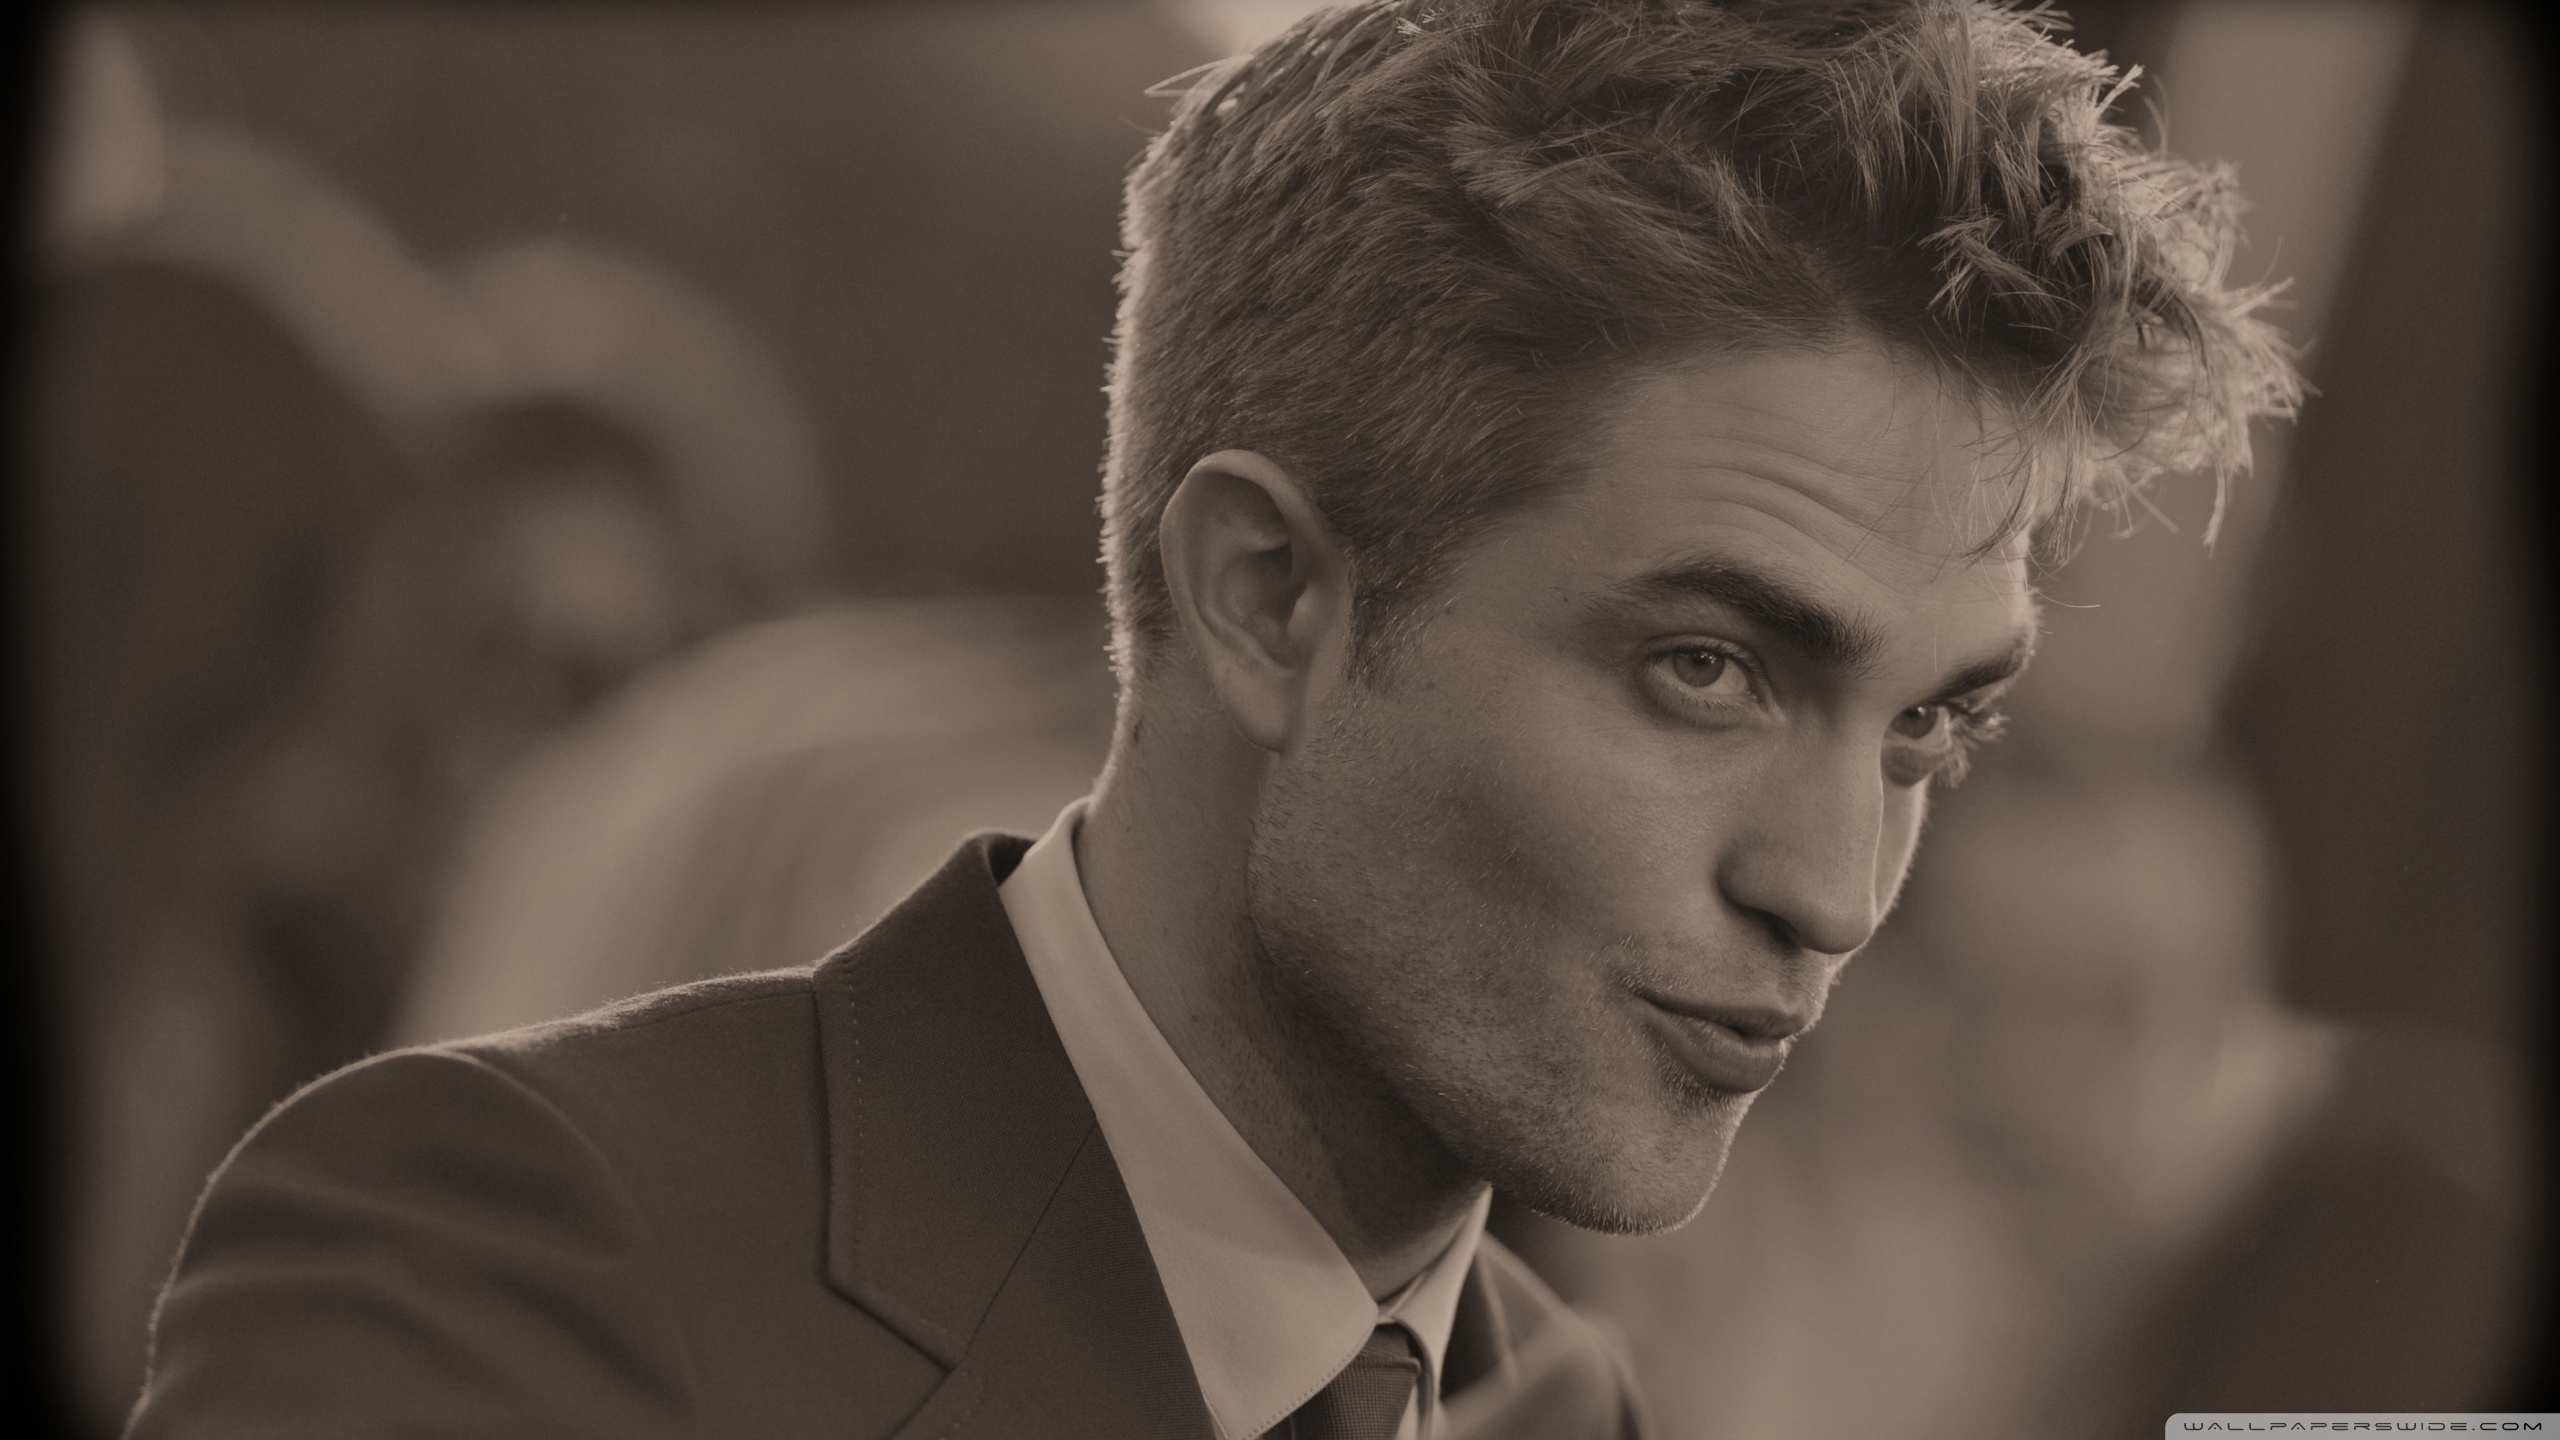 Standard - Robert Pattinson , HD Wallpaper & Backgrounds